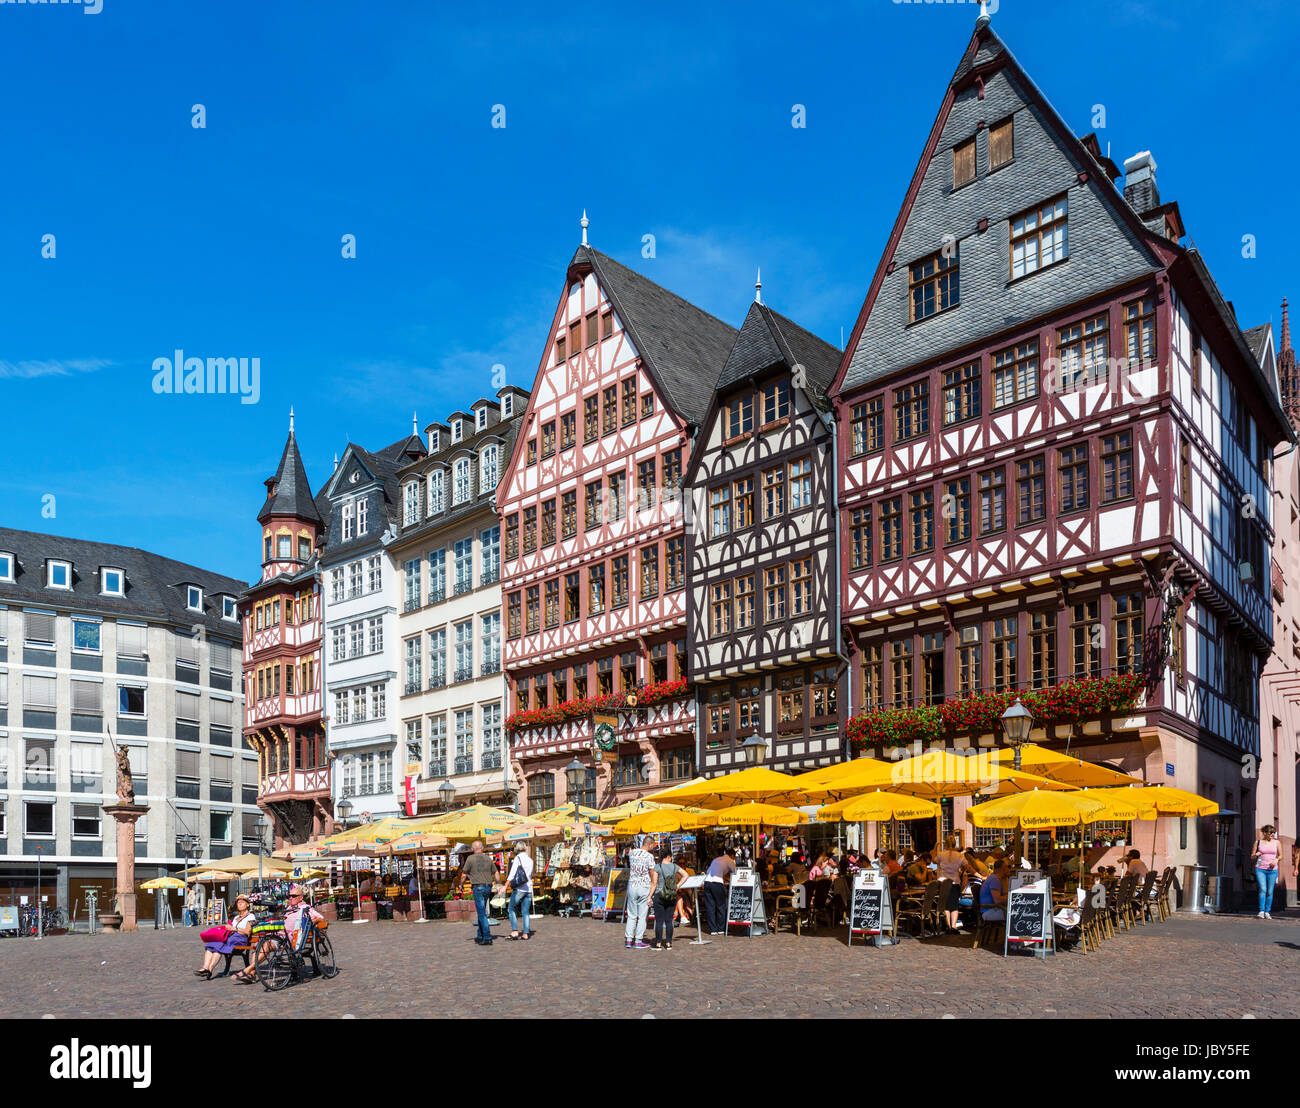 Traditionelle Häuser auf dem Römerberg, Frankfurt am Main, Deutschland Stockfoto